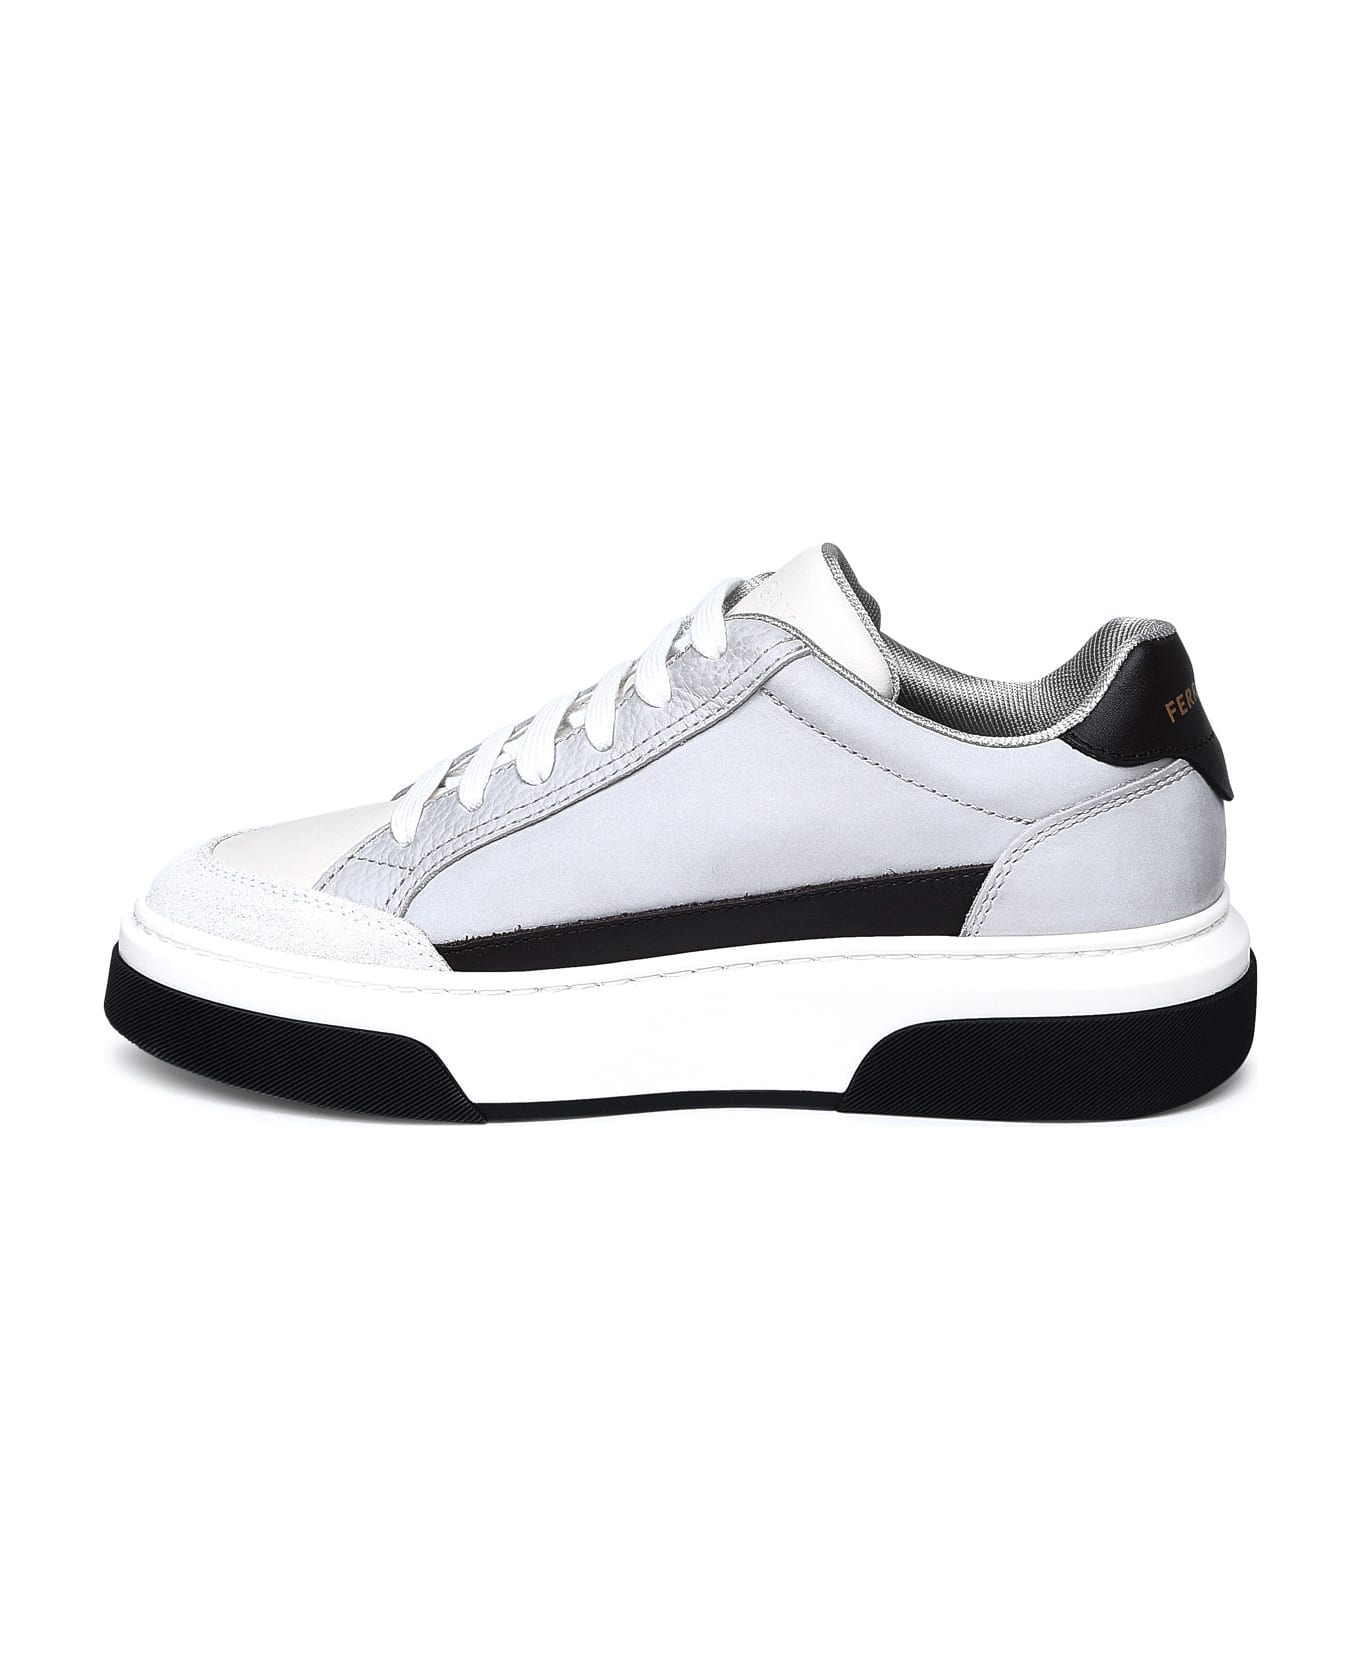 Ferragamo Multicolor Nappa Leather Sneakers - Grey